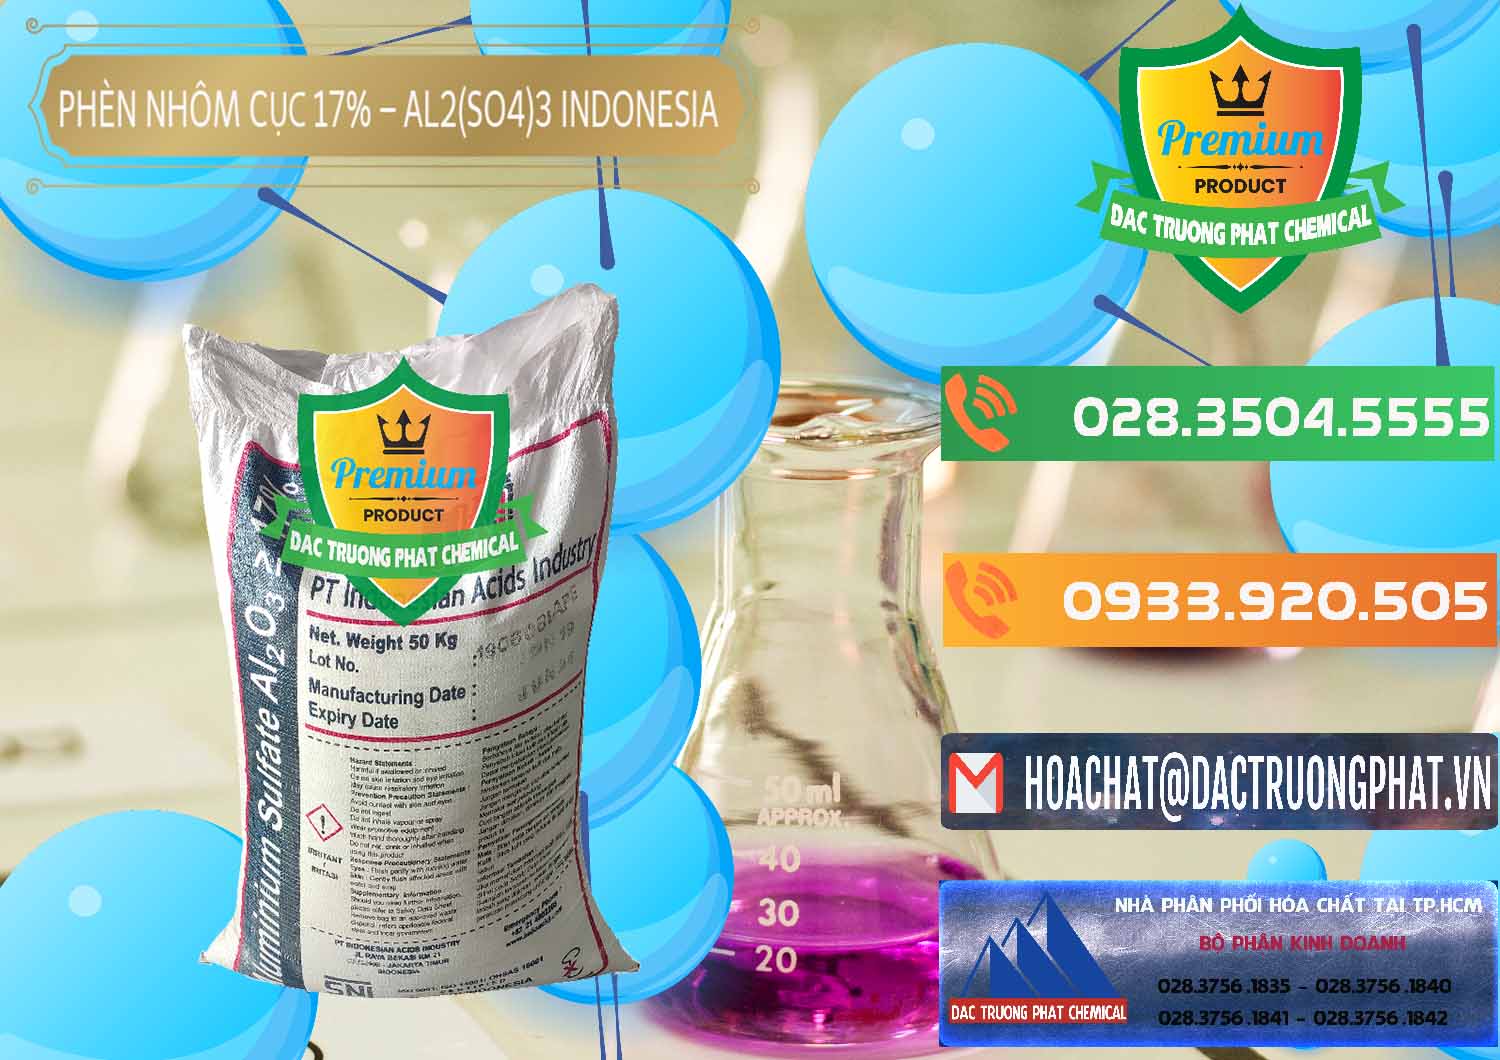 Cty bán - cung cấp Phèn Nhôm Cục - Al2(SO4)3 17% bao 50kg Indonesia - 0113 - Nhà cung ứng và phân phối hóa chất tại TP.HCM - hoachatxulynuoc.com.vn